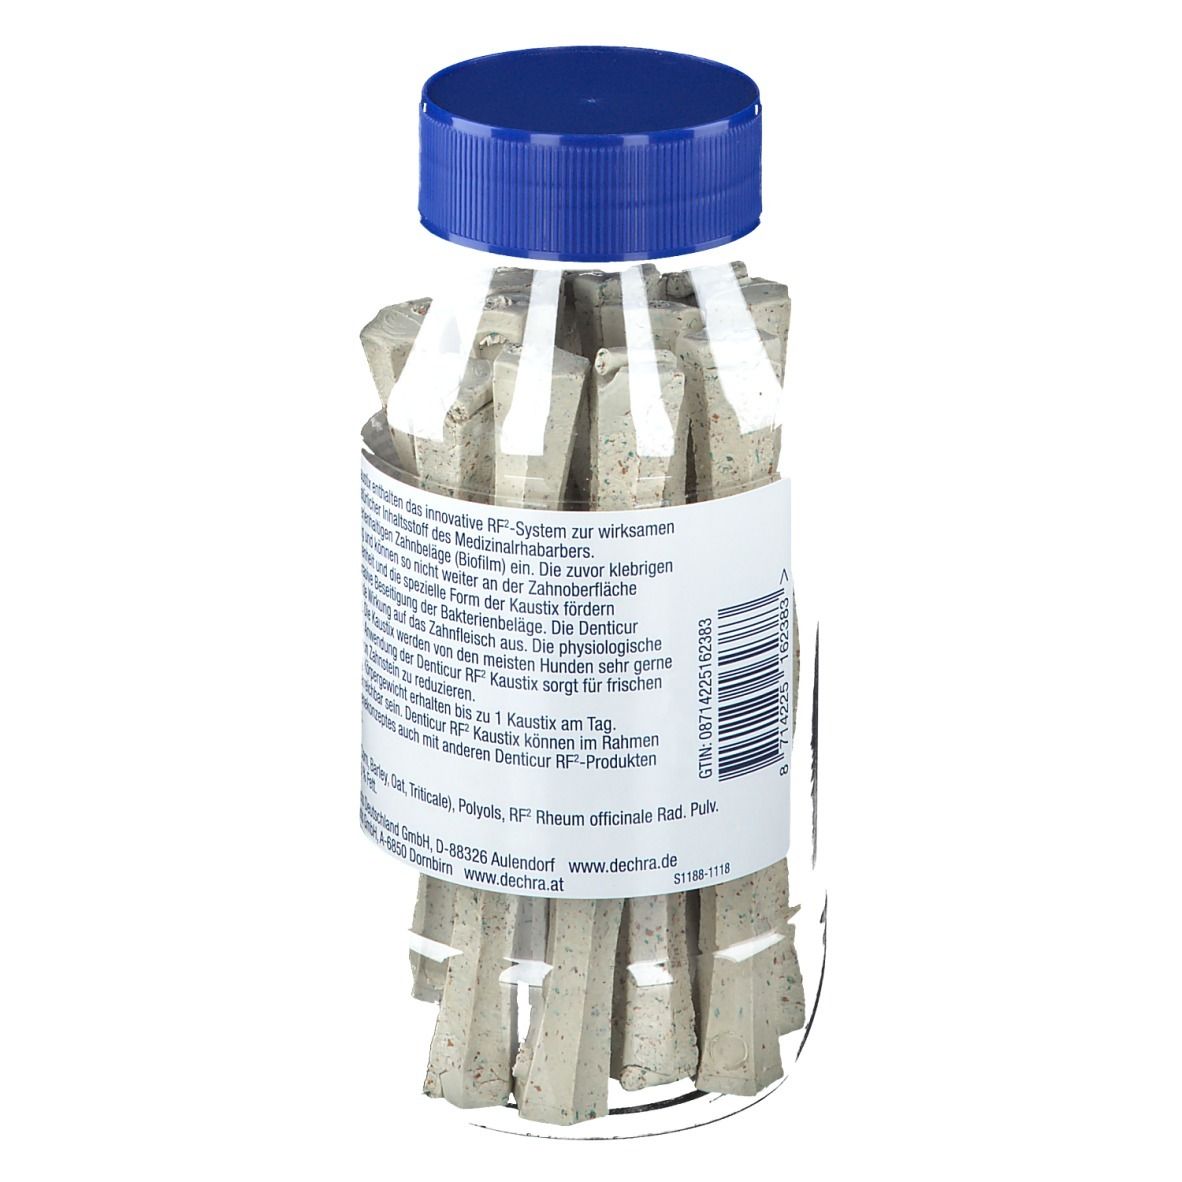 Denticur® RF2 Kaustix L über 25 Kg